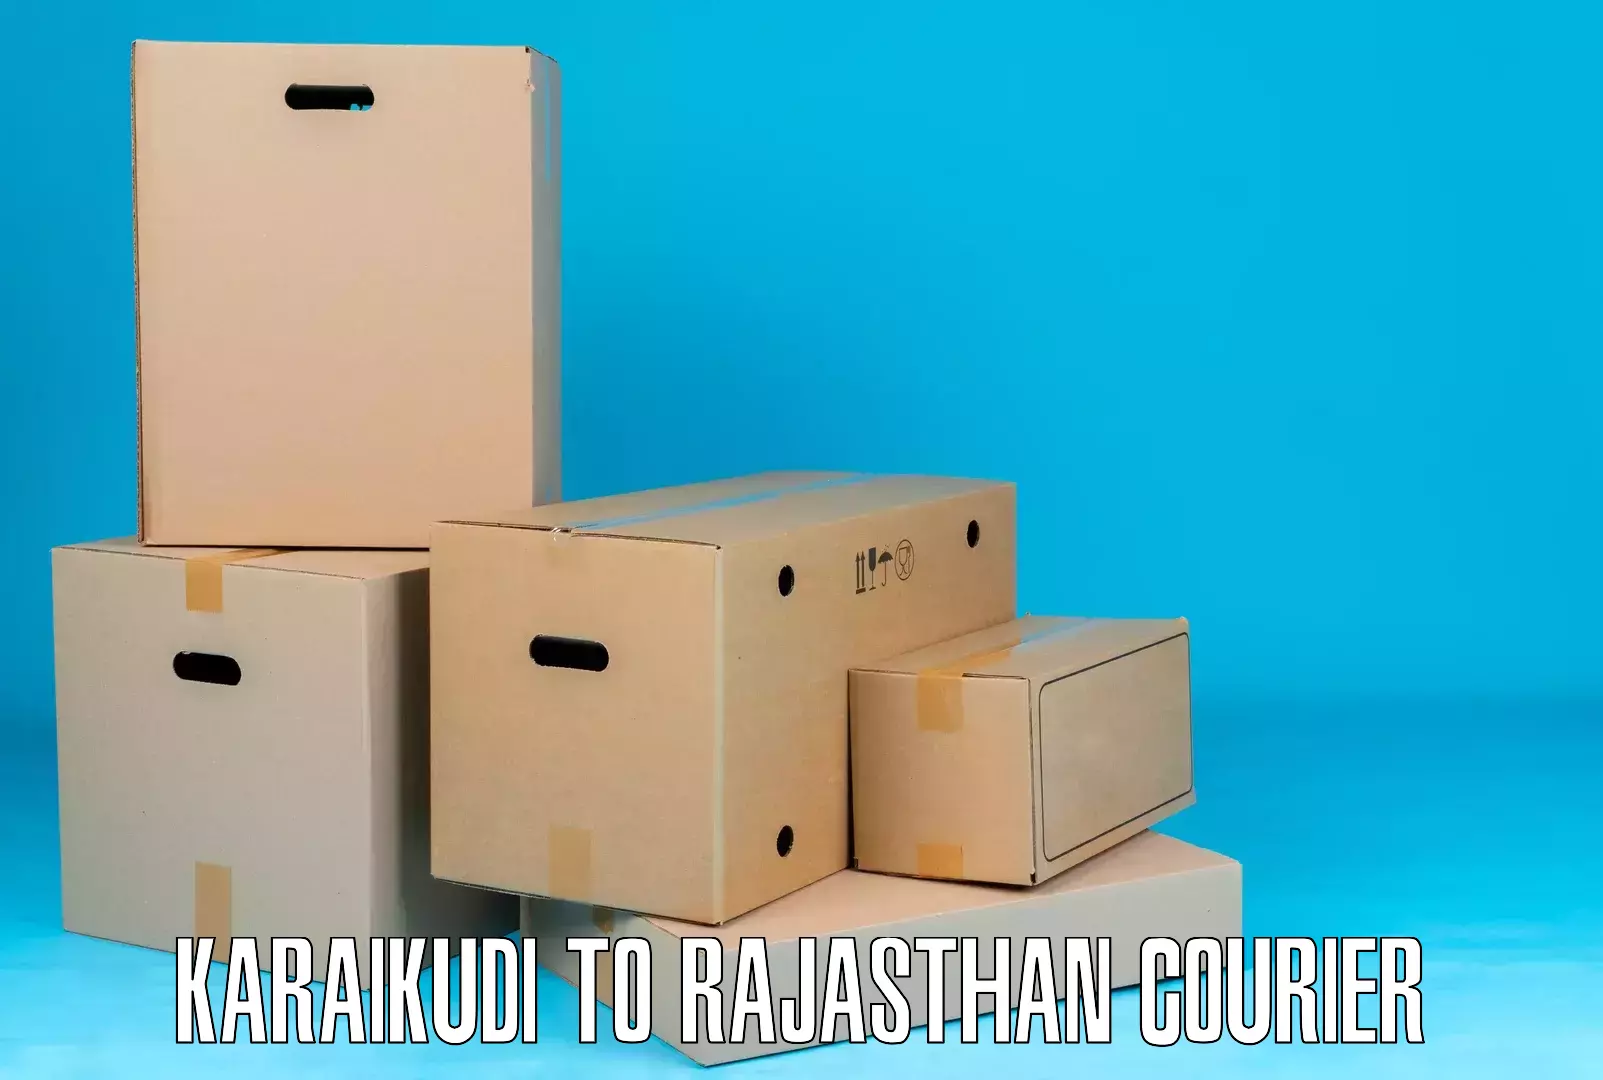 Efficient courier operations Karaikudi to Rajasthan